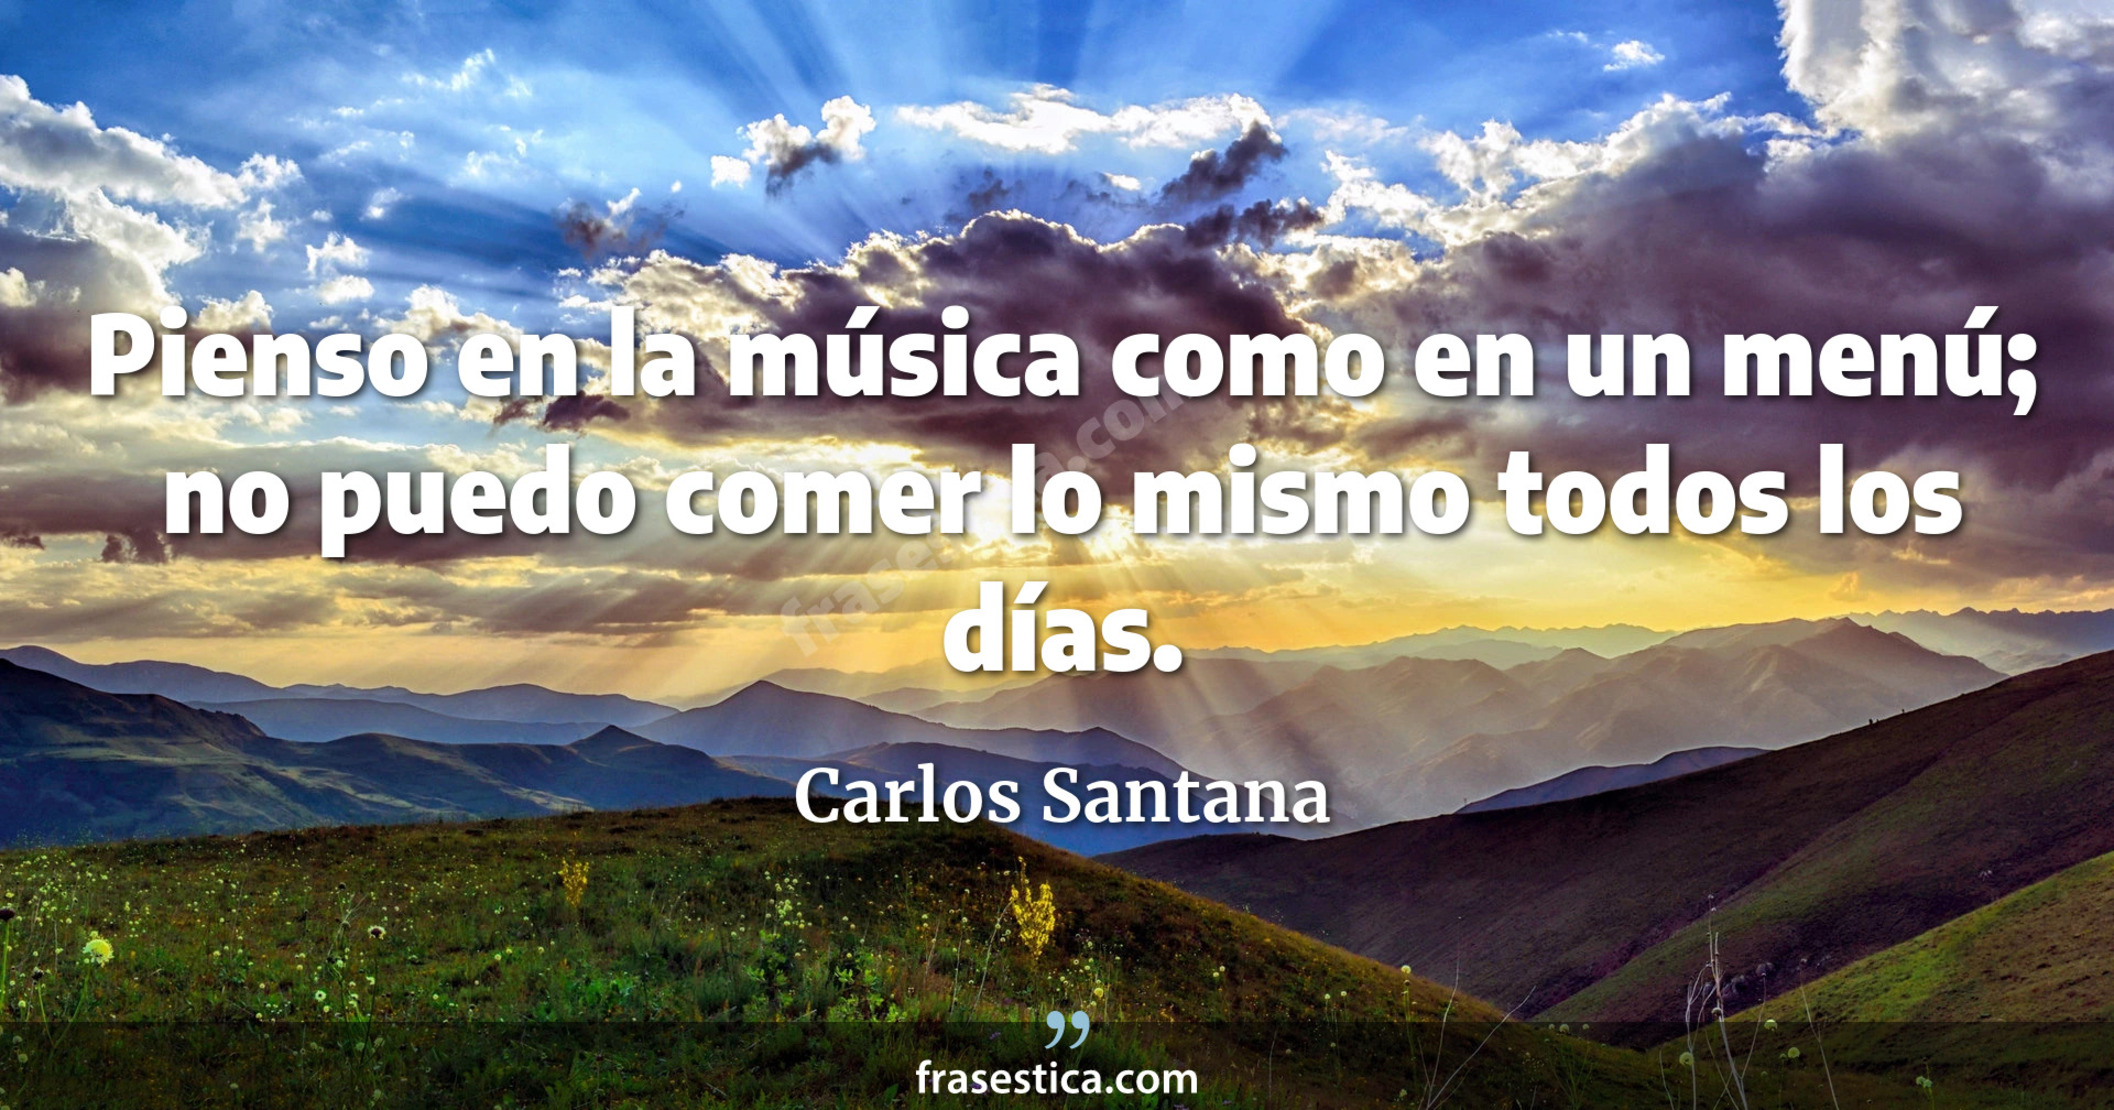 Pienso en la música como en un menú; no puedo comer lo mismo todos los días. - Carlos Santana